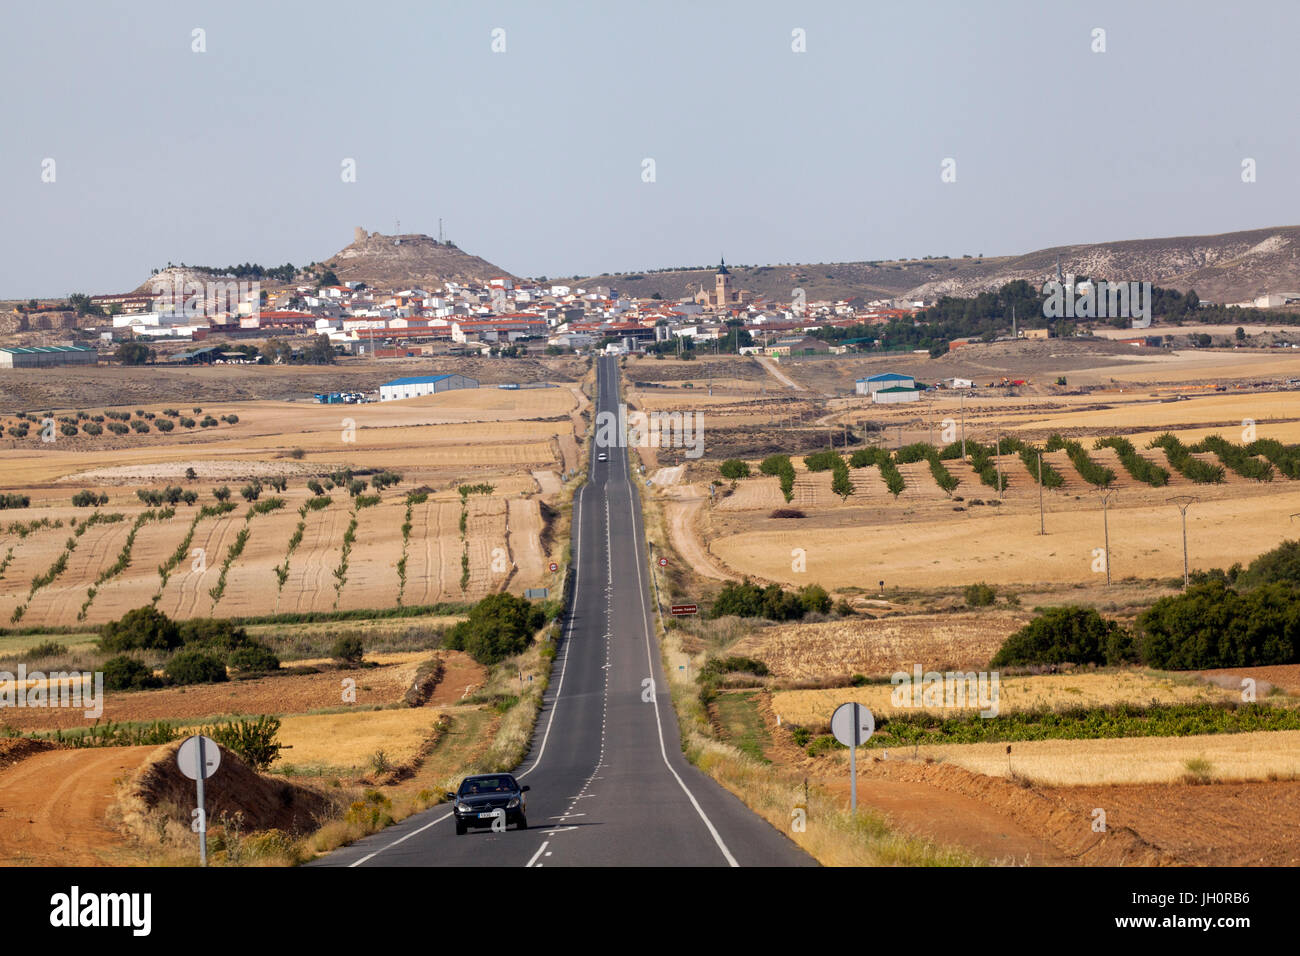 Le paysage aride de la région de Castilla-La Mancha Espagne centrale Banque D'Images